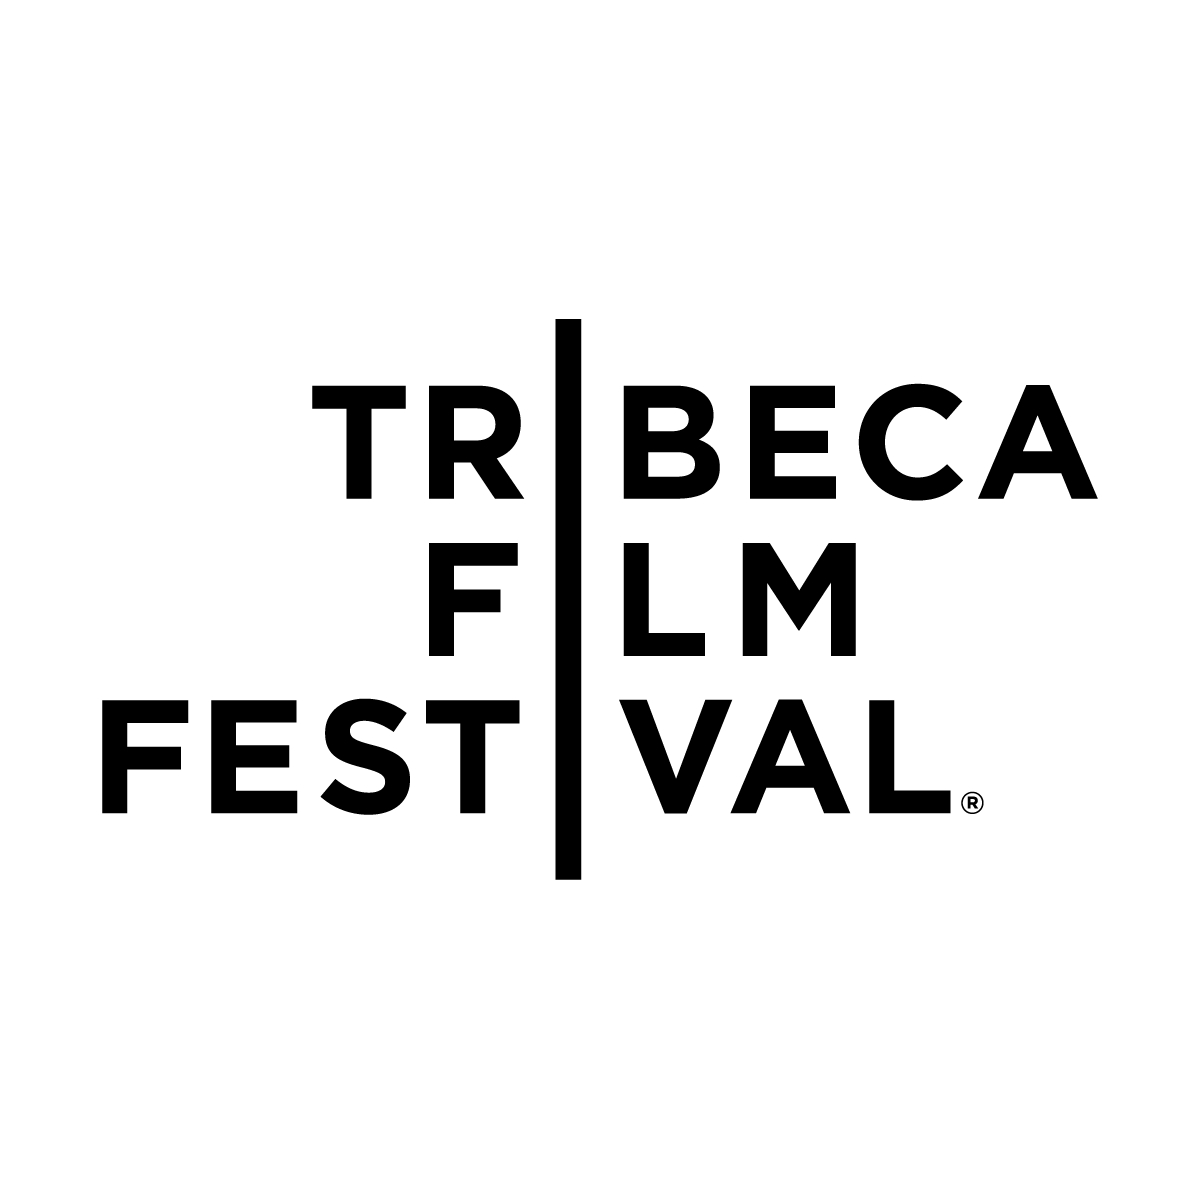 courtesy of Tribeca Film Festival